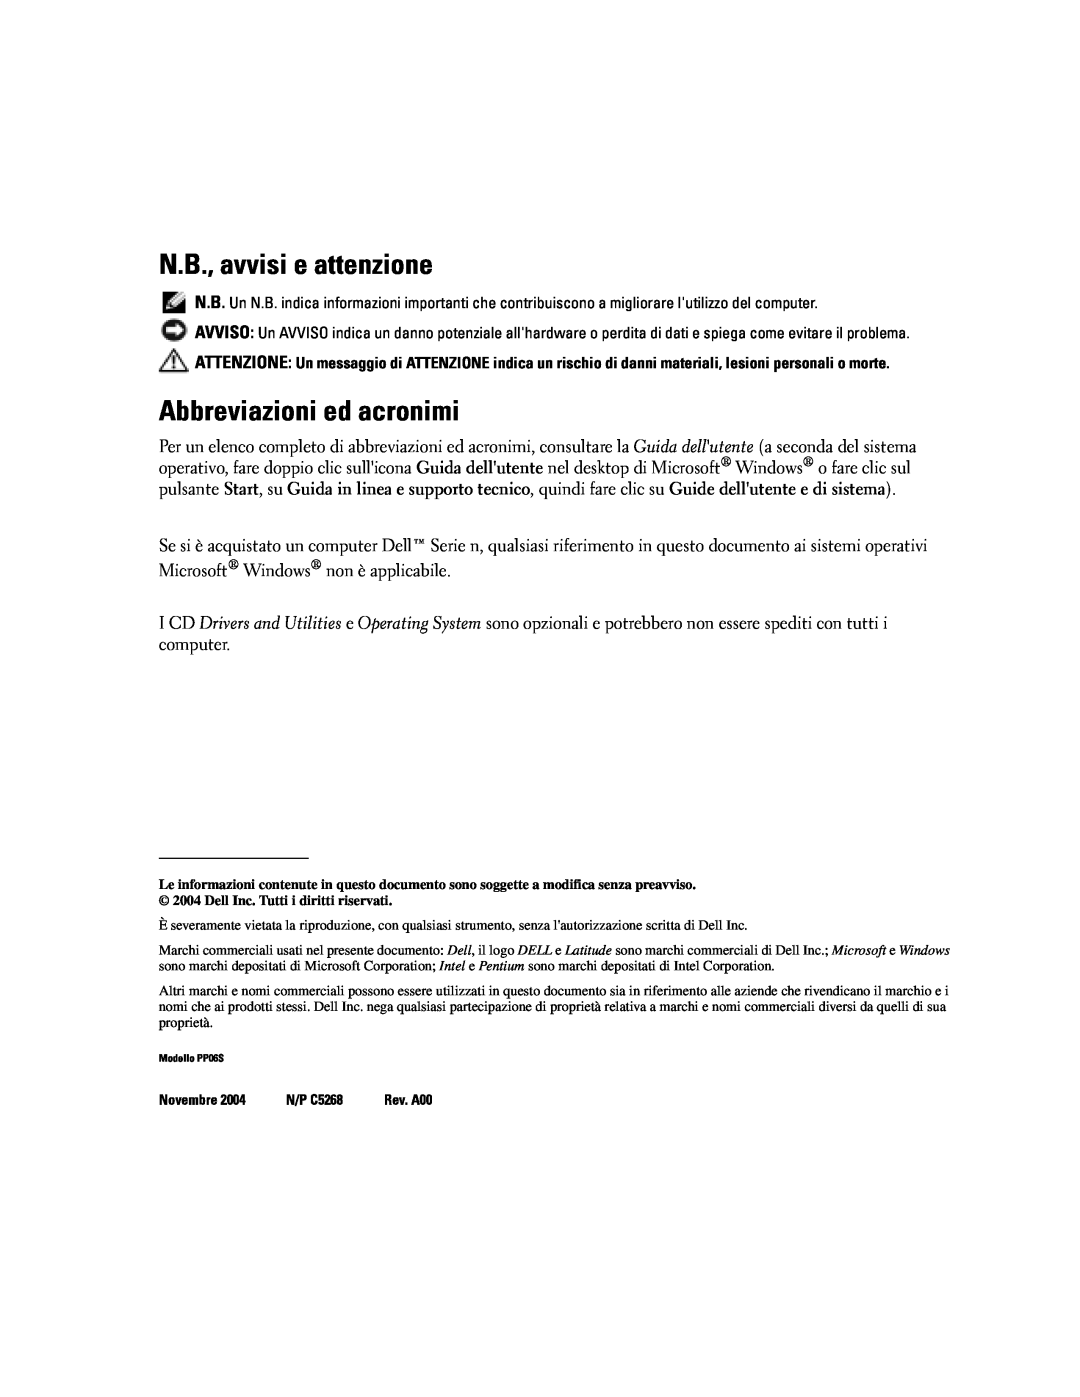 Dell PP06S manual N.B., avvisi e attenzione, Abbreviazioni ed acronimi 